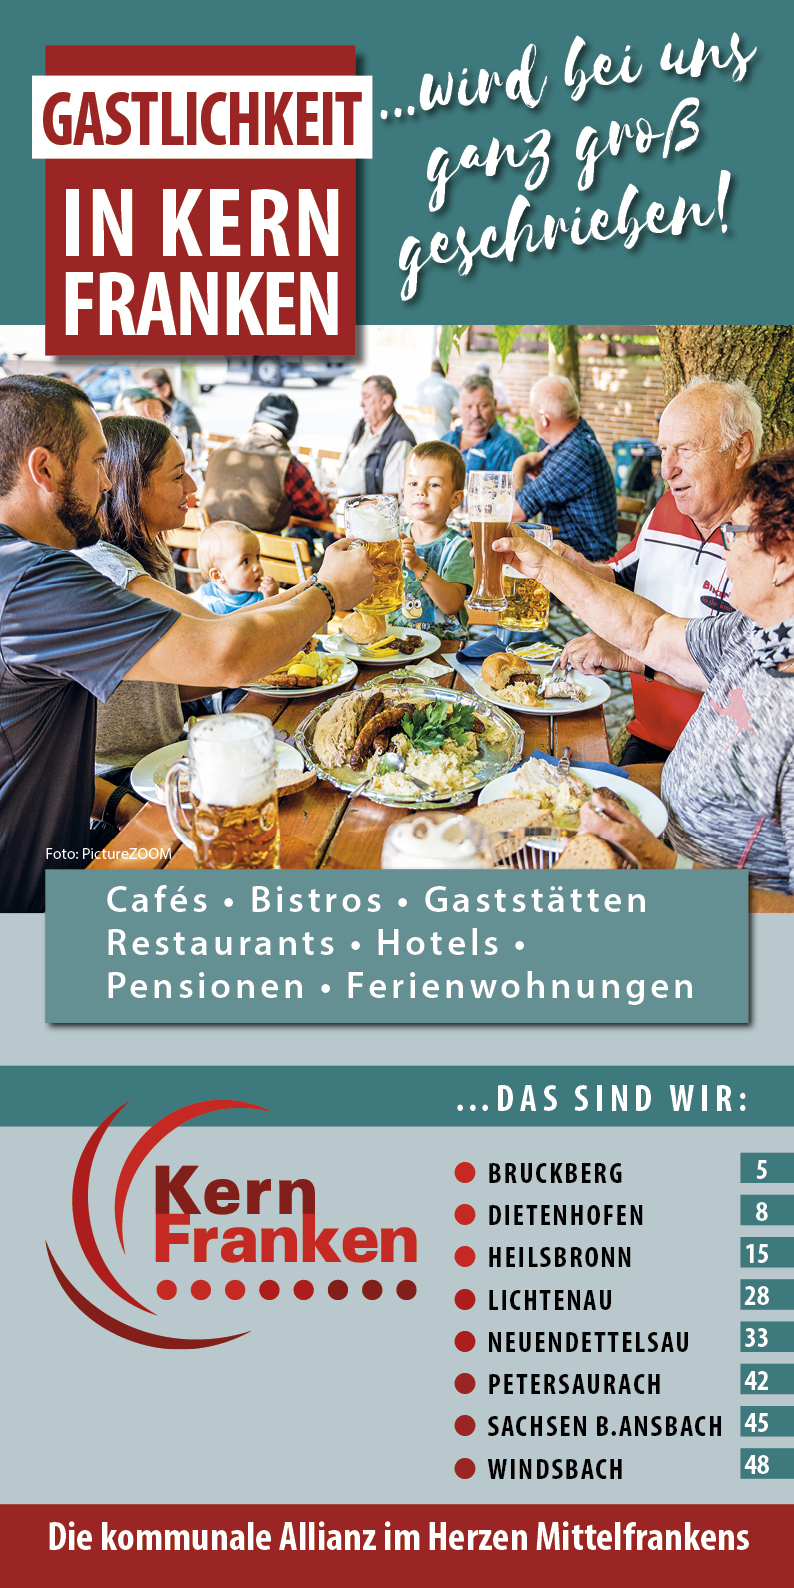  Gaststättenführer "Gastlickeit in Kernfranken" 